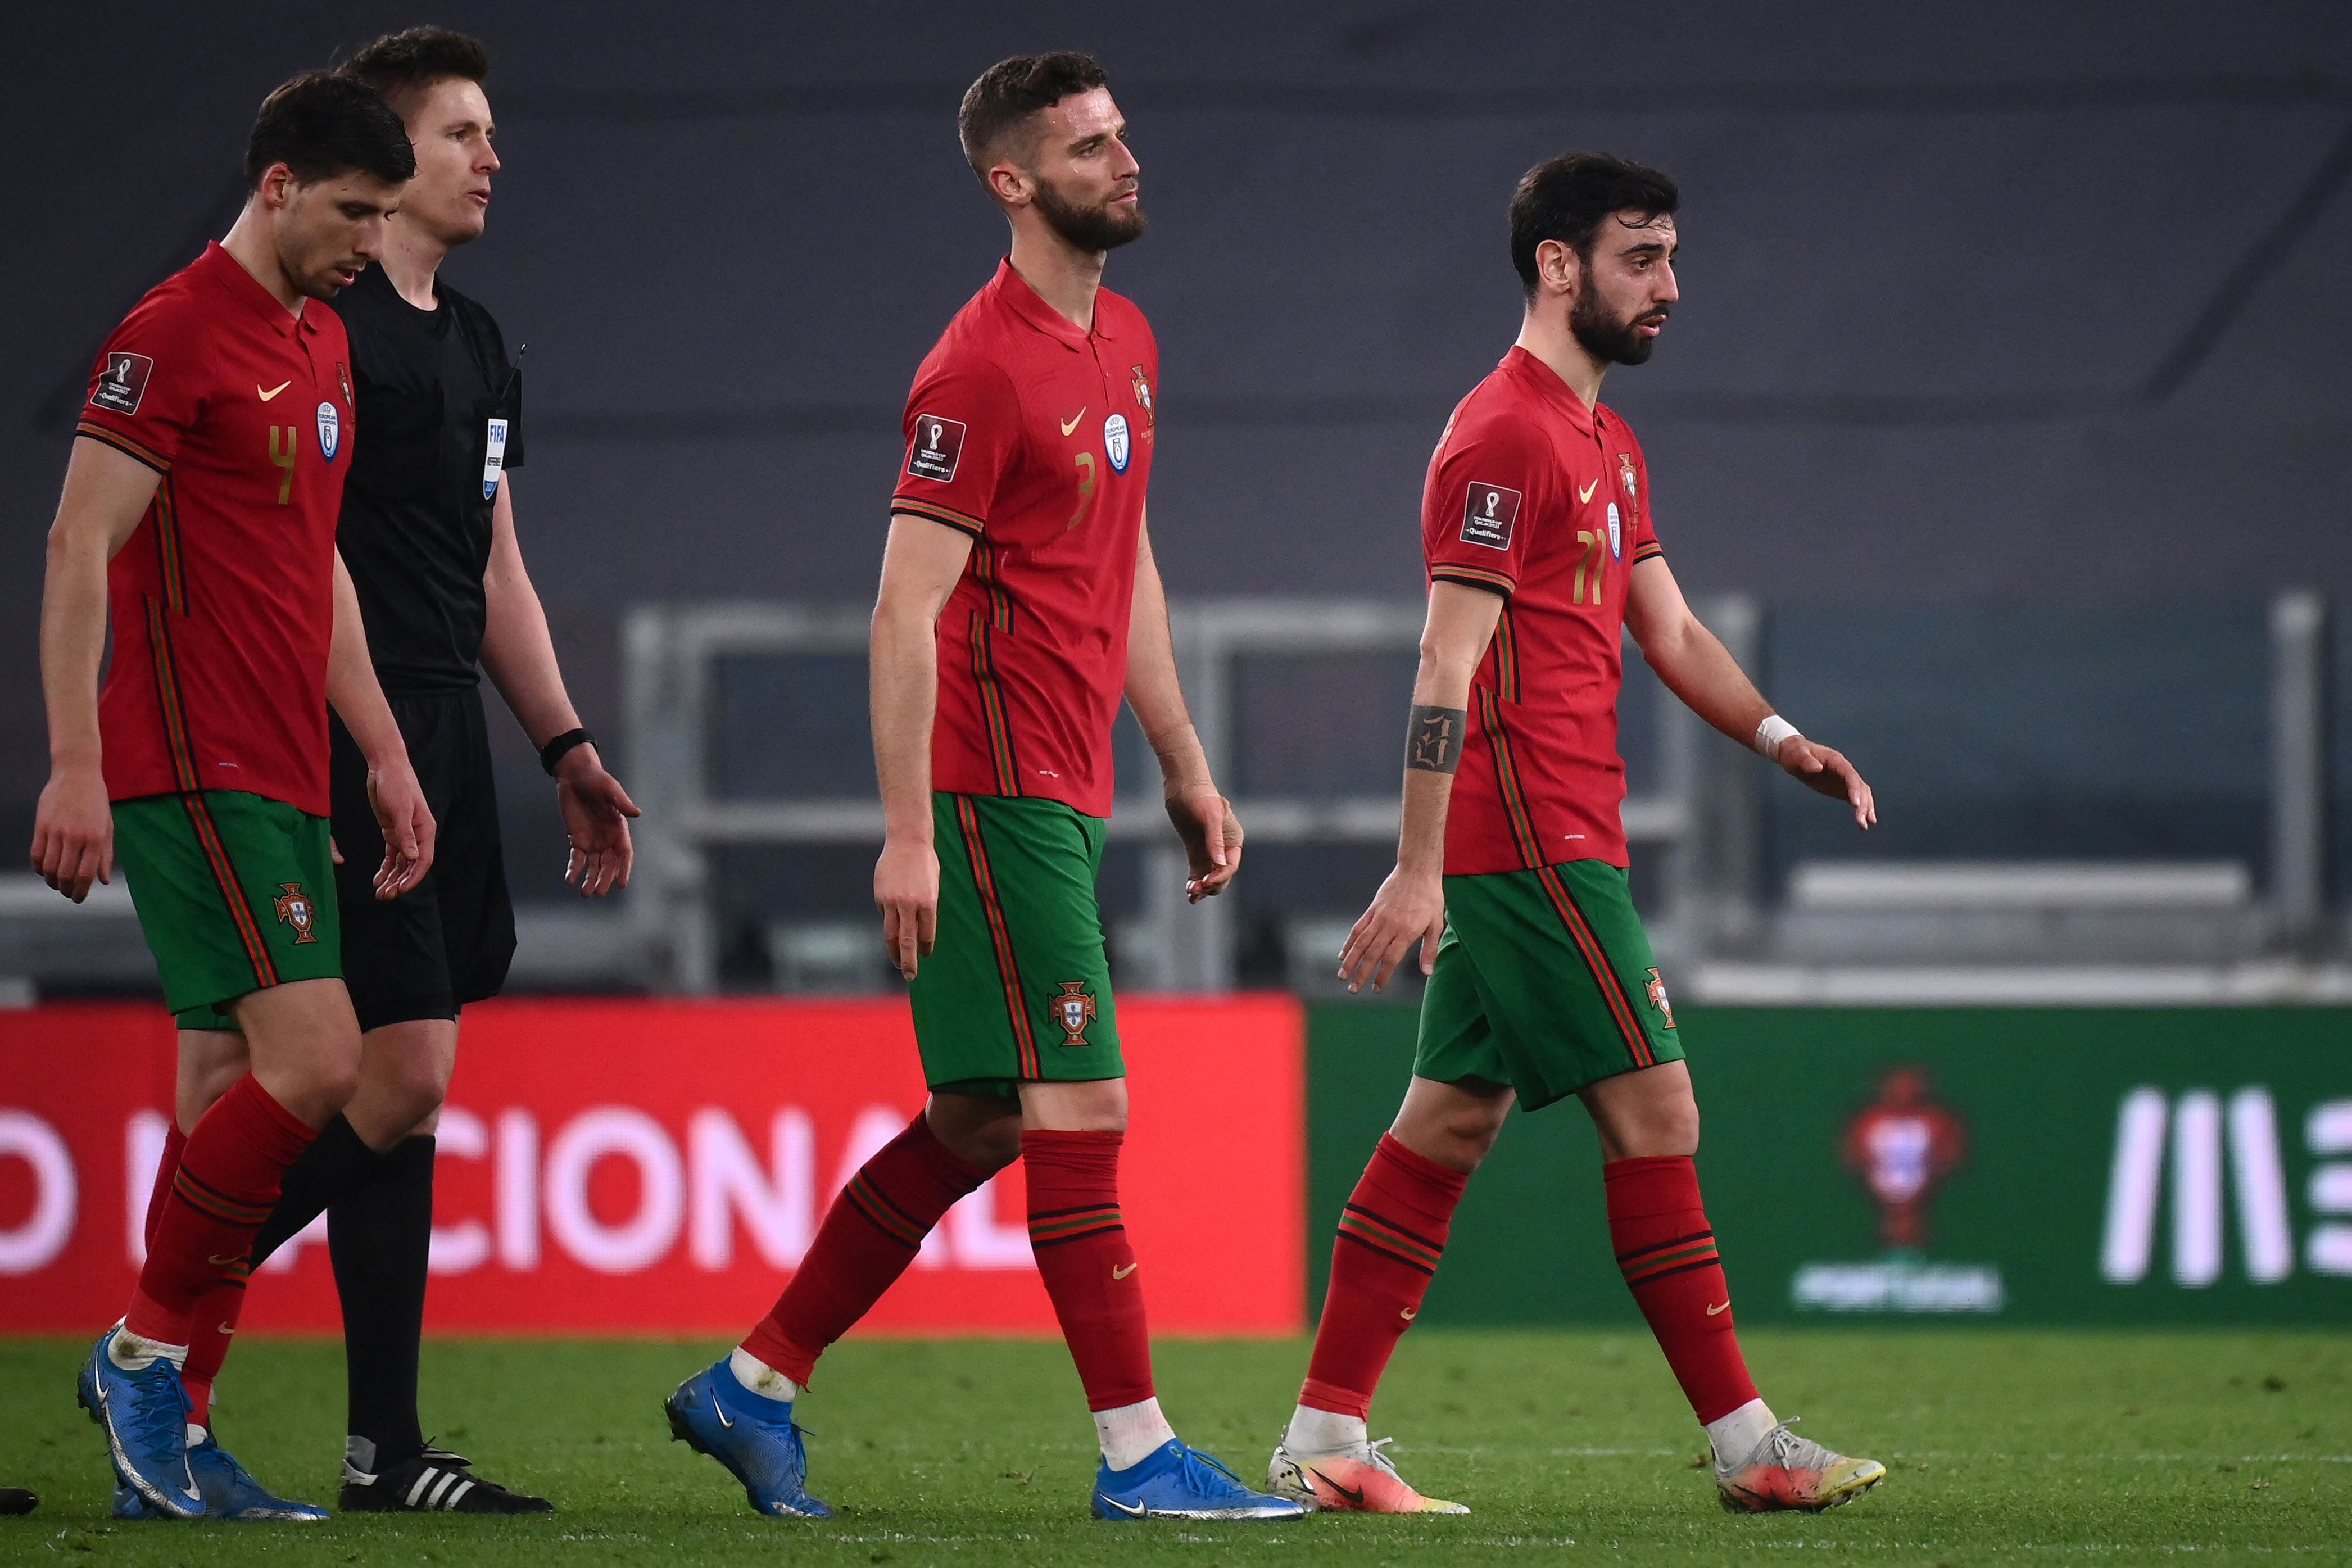 Portugal ganó por la mínima diferencia